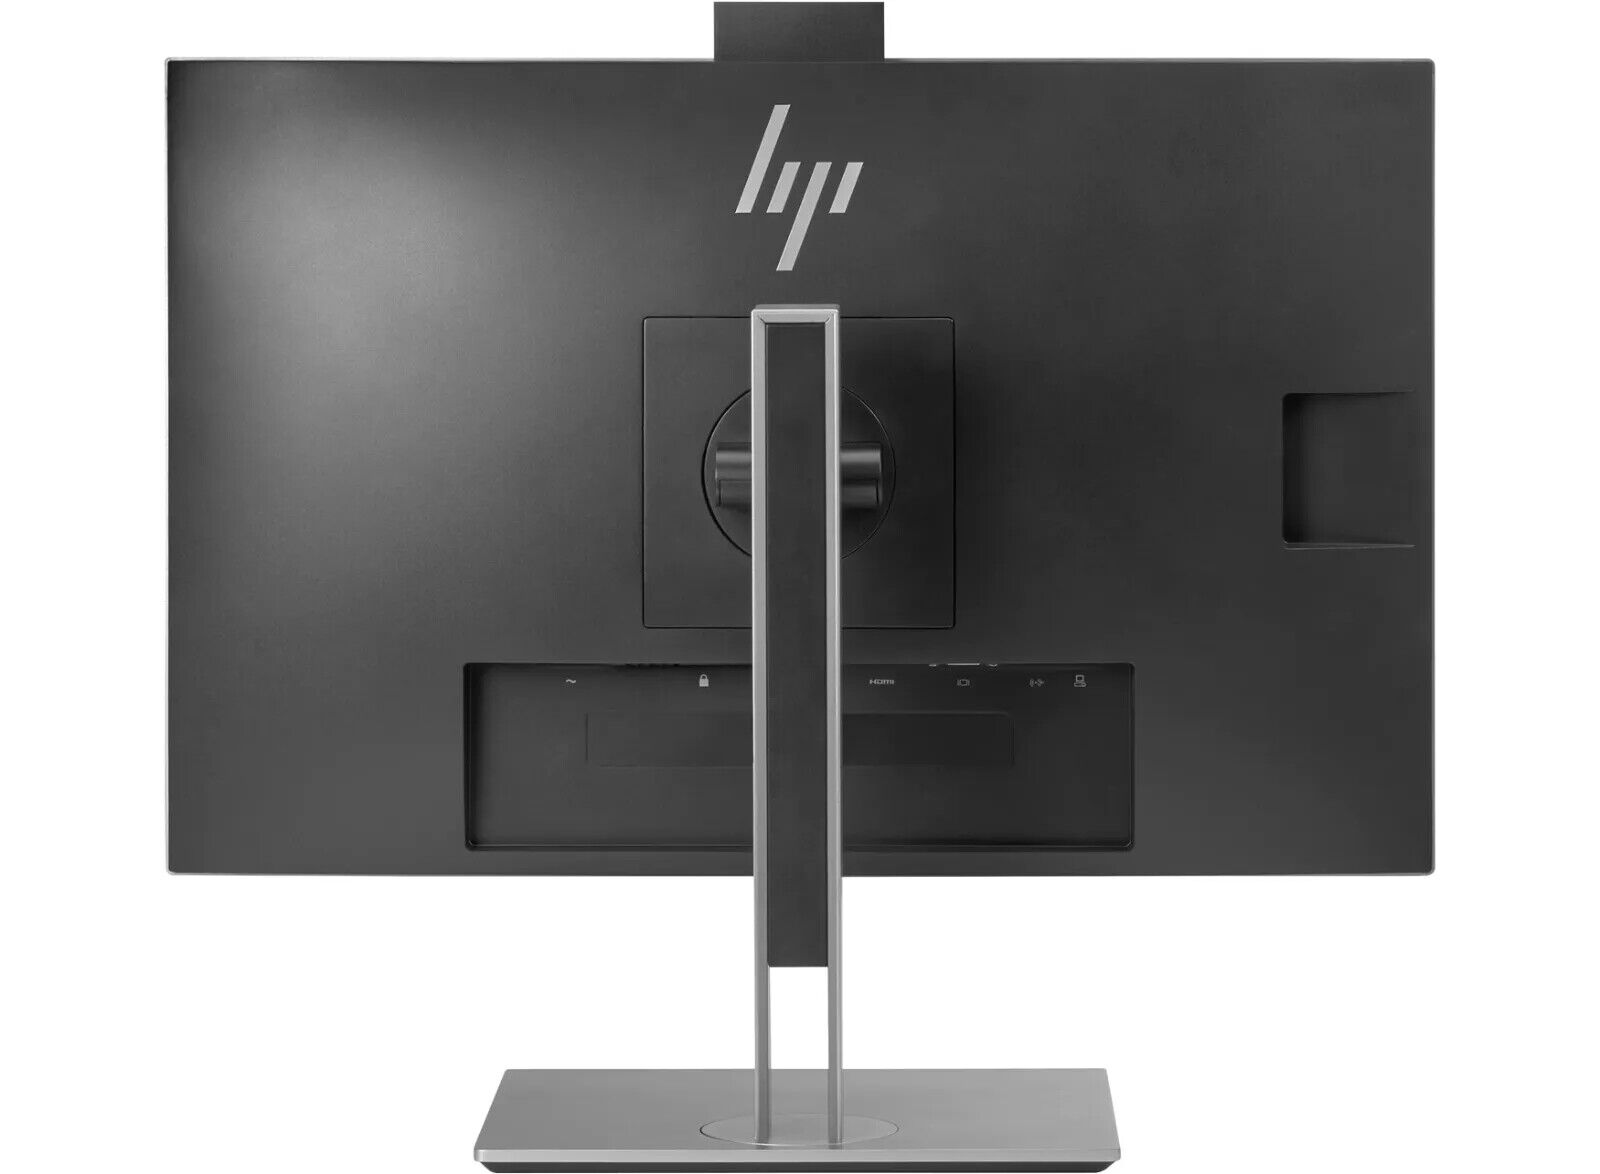 HP-EliteDisplay-E243m-238-IPS-LED-Monitor-with-Pop-up-Webcam-Audio-165345694697-4